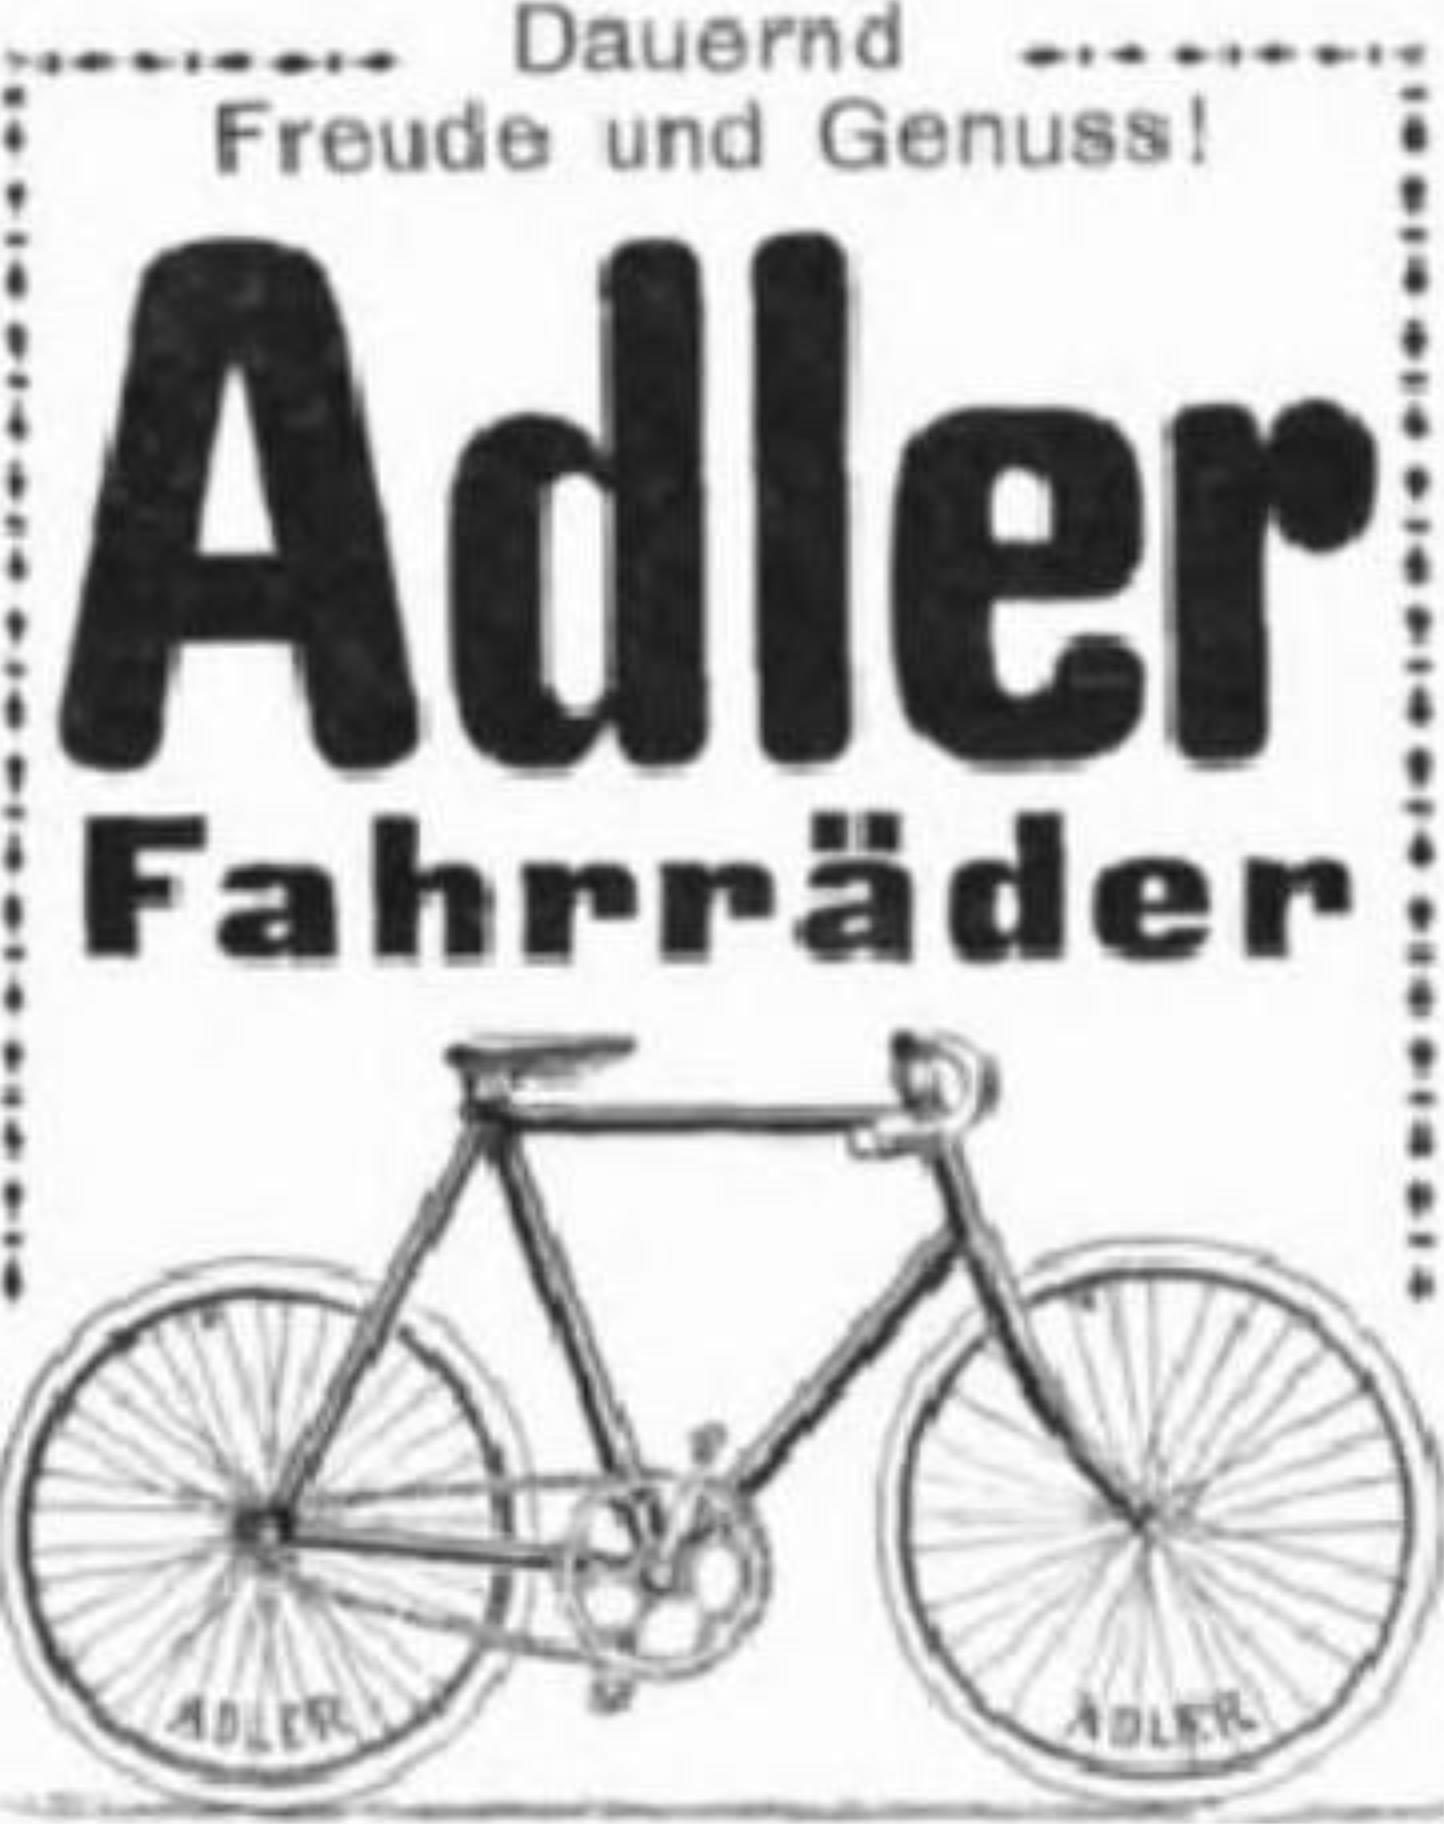 Adler 1910 434.jpg